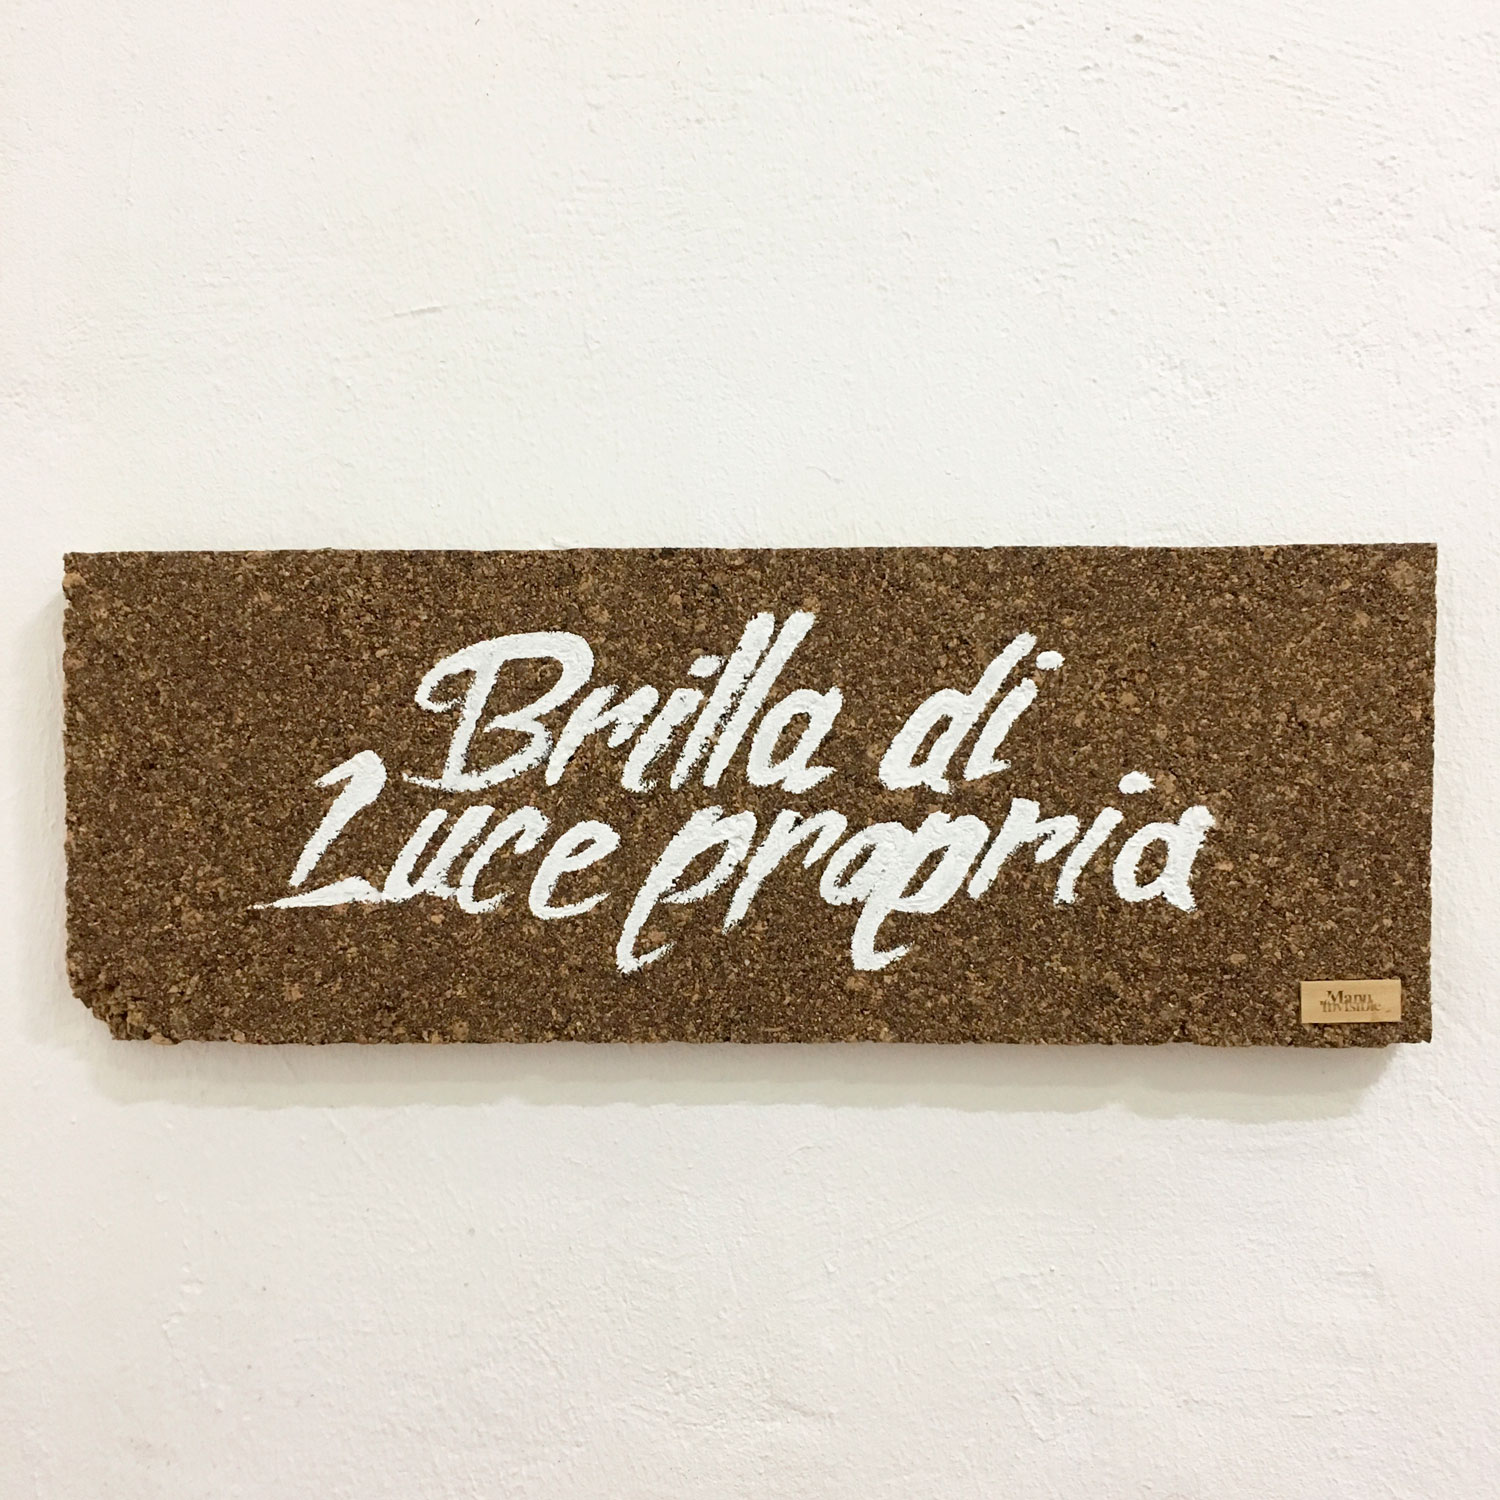 “Brilla di Luce propria” Lime on cork 25 x 70 x 4 cm 2017